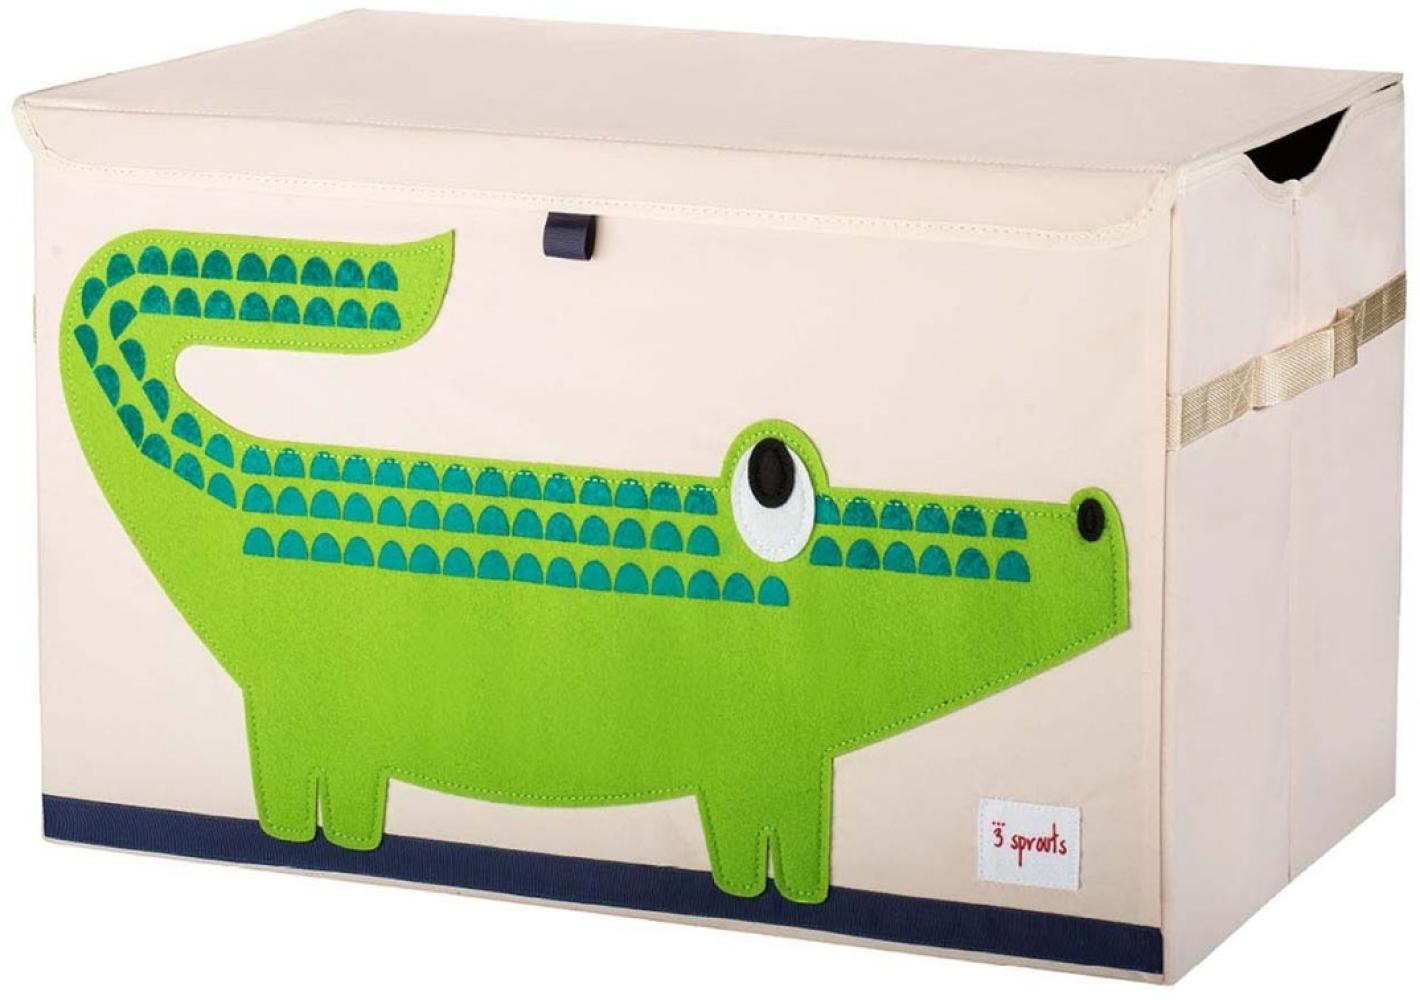 XL Aufbewahrungskiste fürs Kinderzimmer, Krokodil, 38 x 61x 37 cm, von 3 sprouts Bild 1